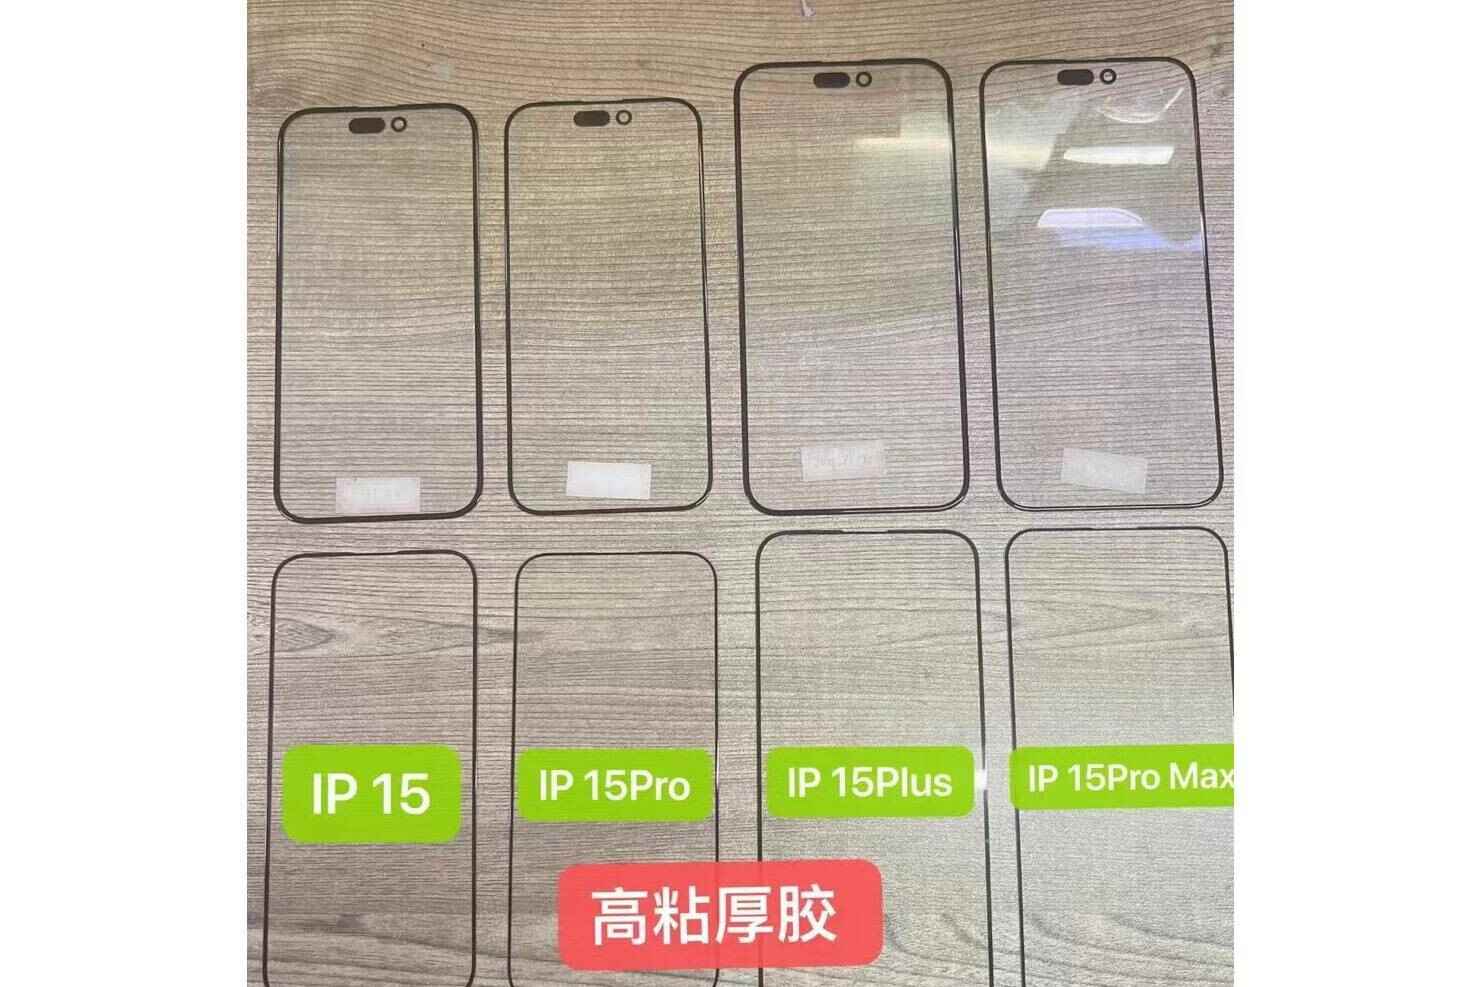 Sızan görüntü, iPhone 15 serisinin cam panellerini ve ekran koruyucularını gösterdiğini iddia ediyor - iPhone 15 serisi ön cam panel ve koruyucu sızıntısı, önemli tasarım değişikliklerini gösteriyor